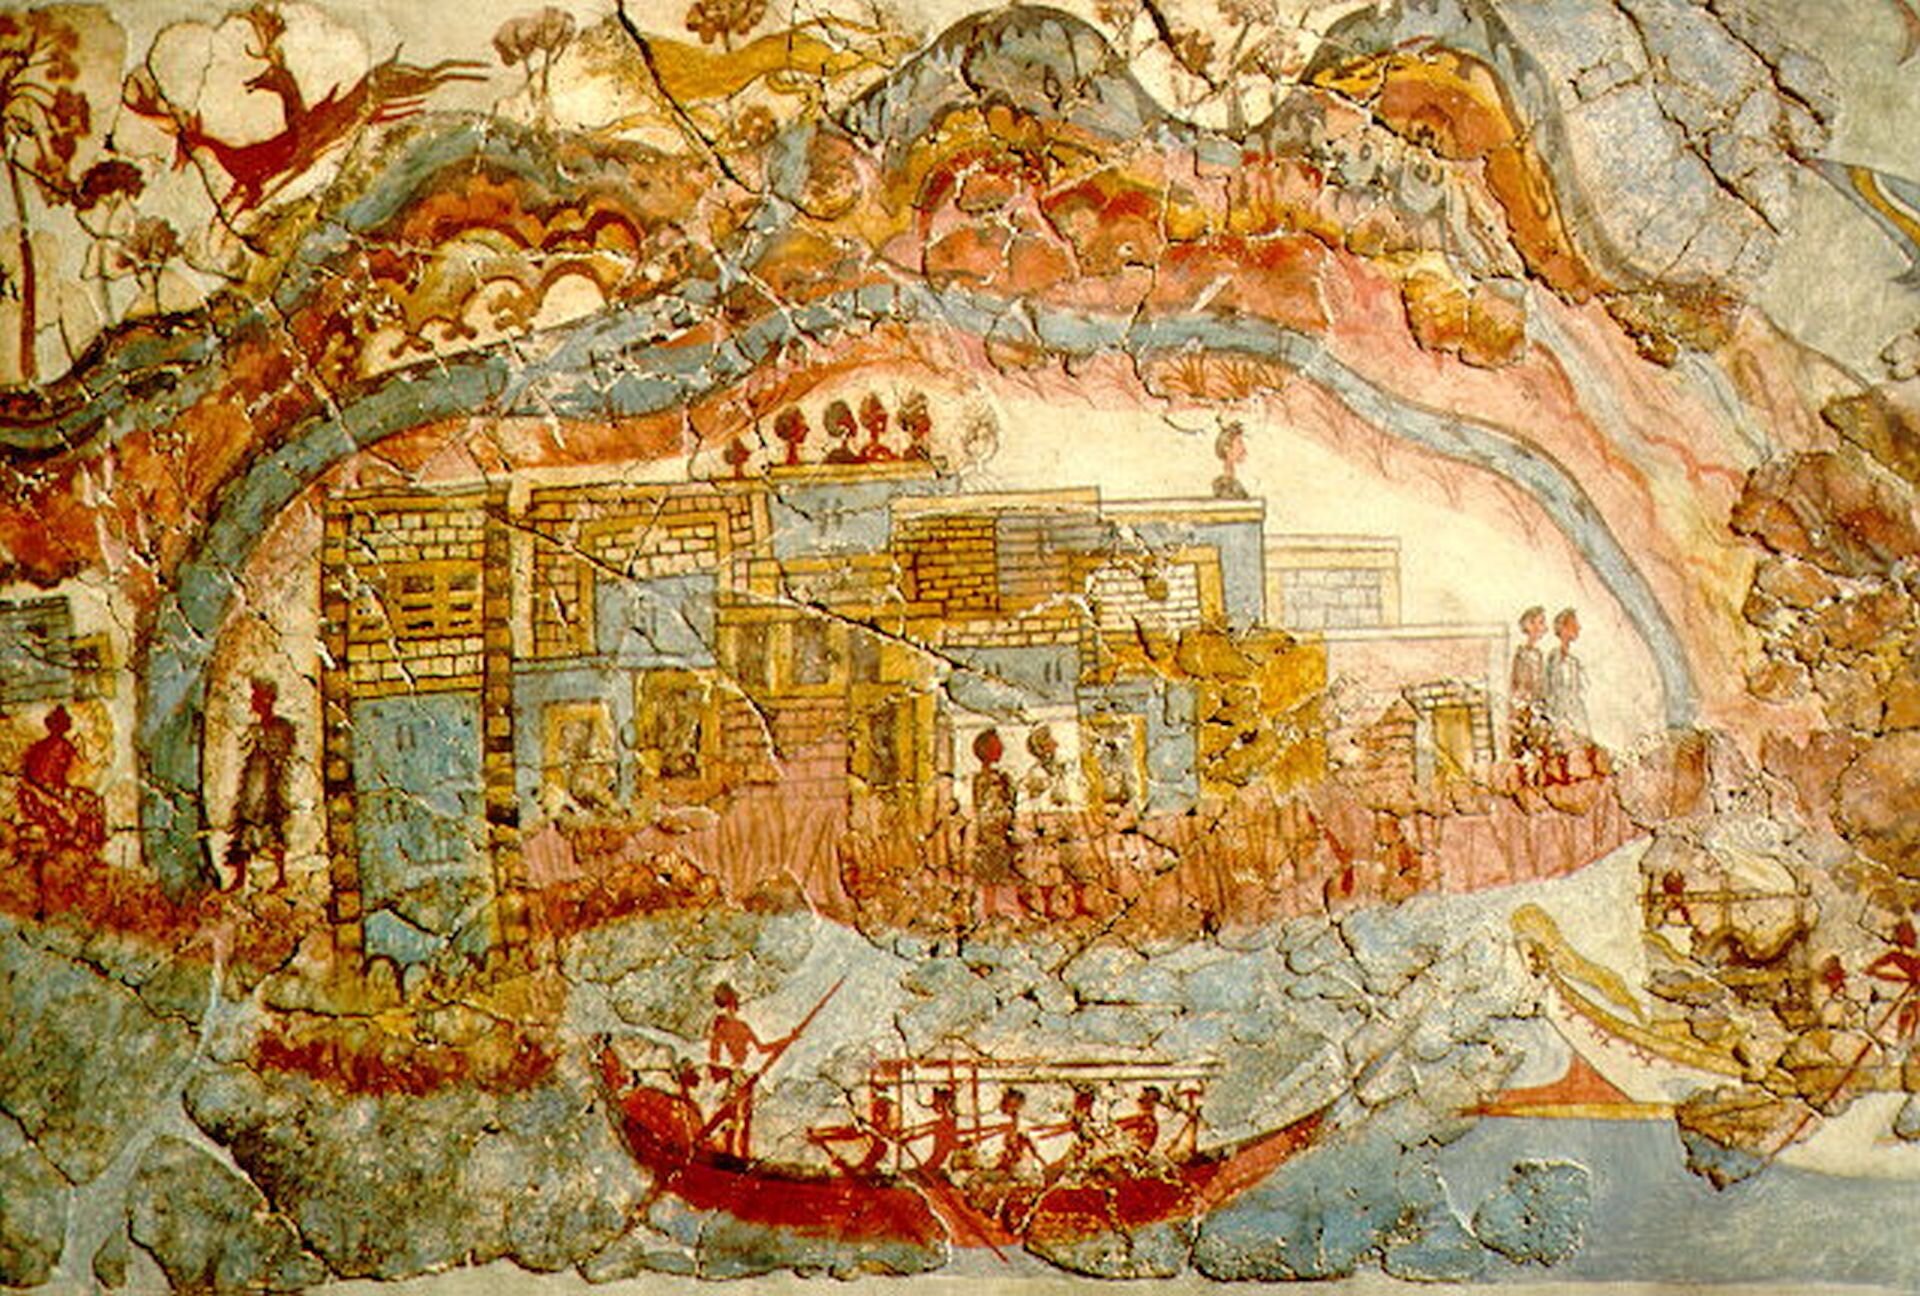 lustracja  przedstawia fresk znaleziony w Akrotiri. Pokazuje on miasto z ceglaną budowlą. Jest to minojskie miasto wraz z mieszkańcami. Na pierwszym planie znajduje się rzeka i łódź, którą płyną mężczyźni.